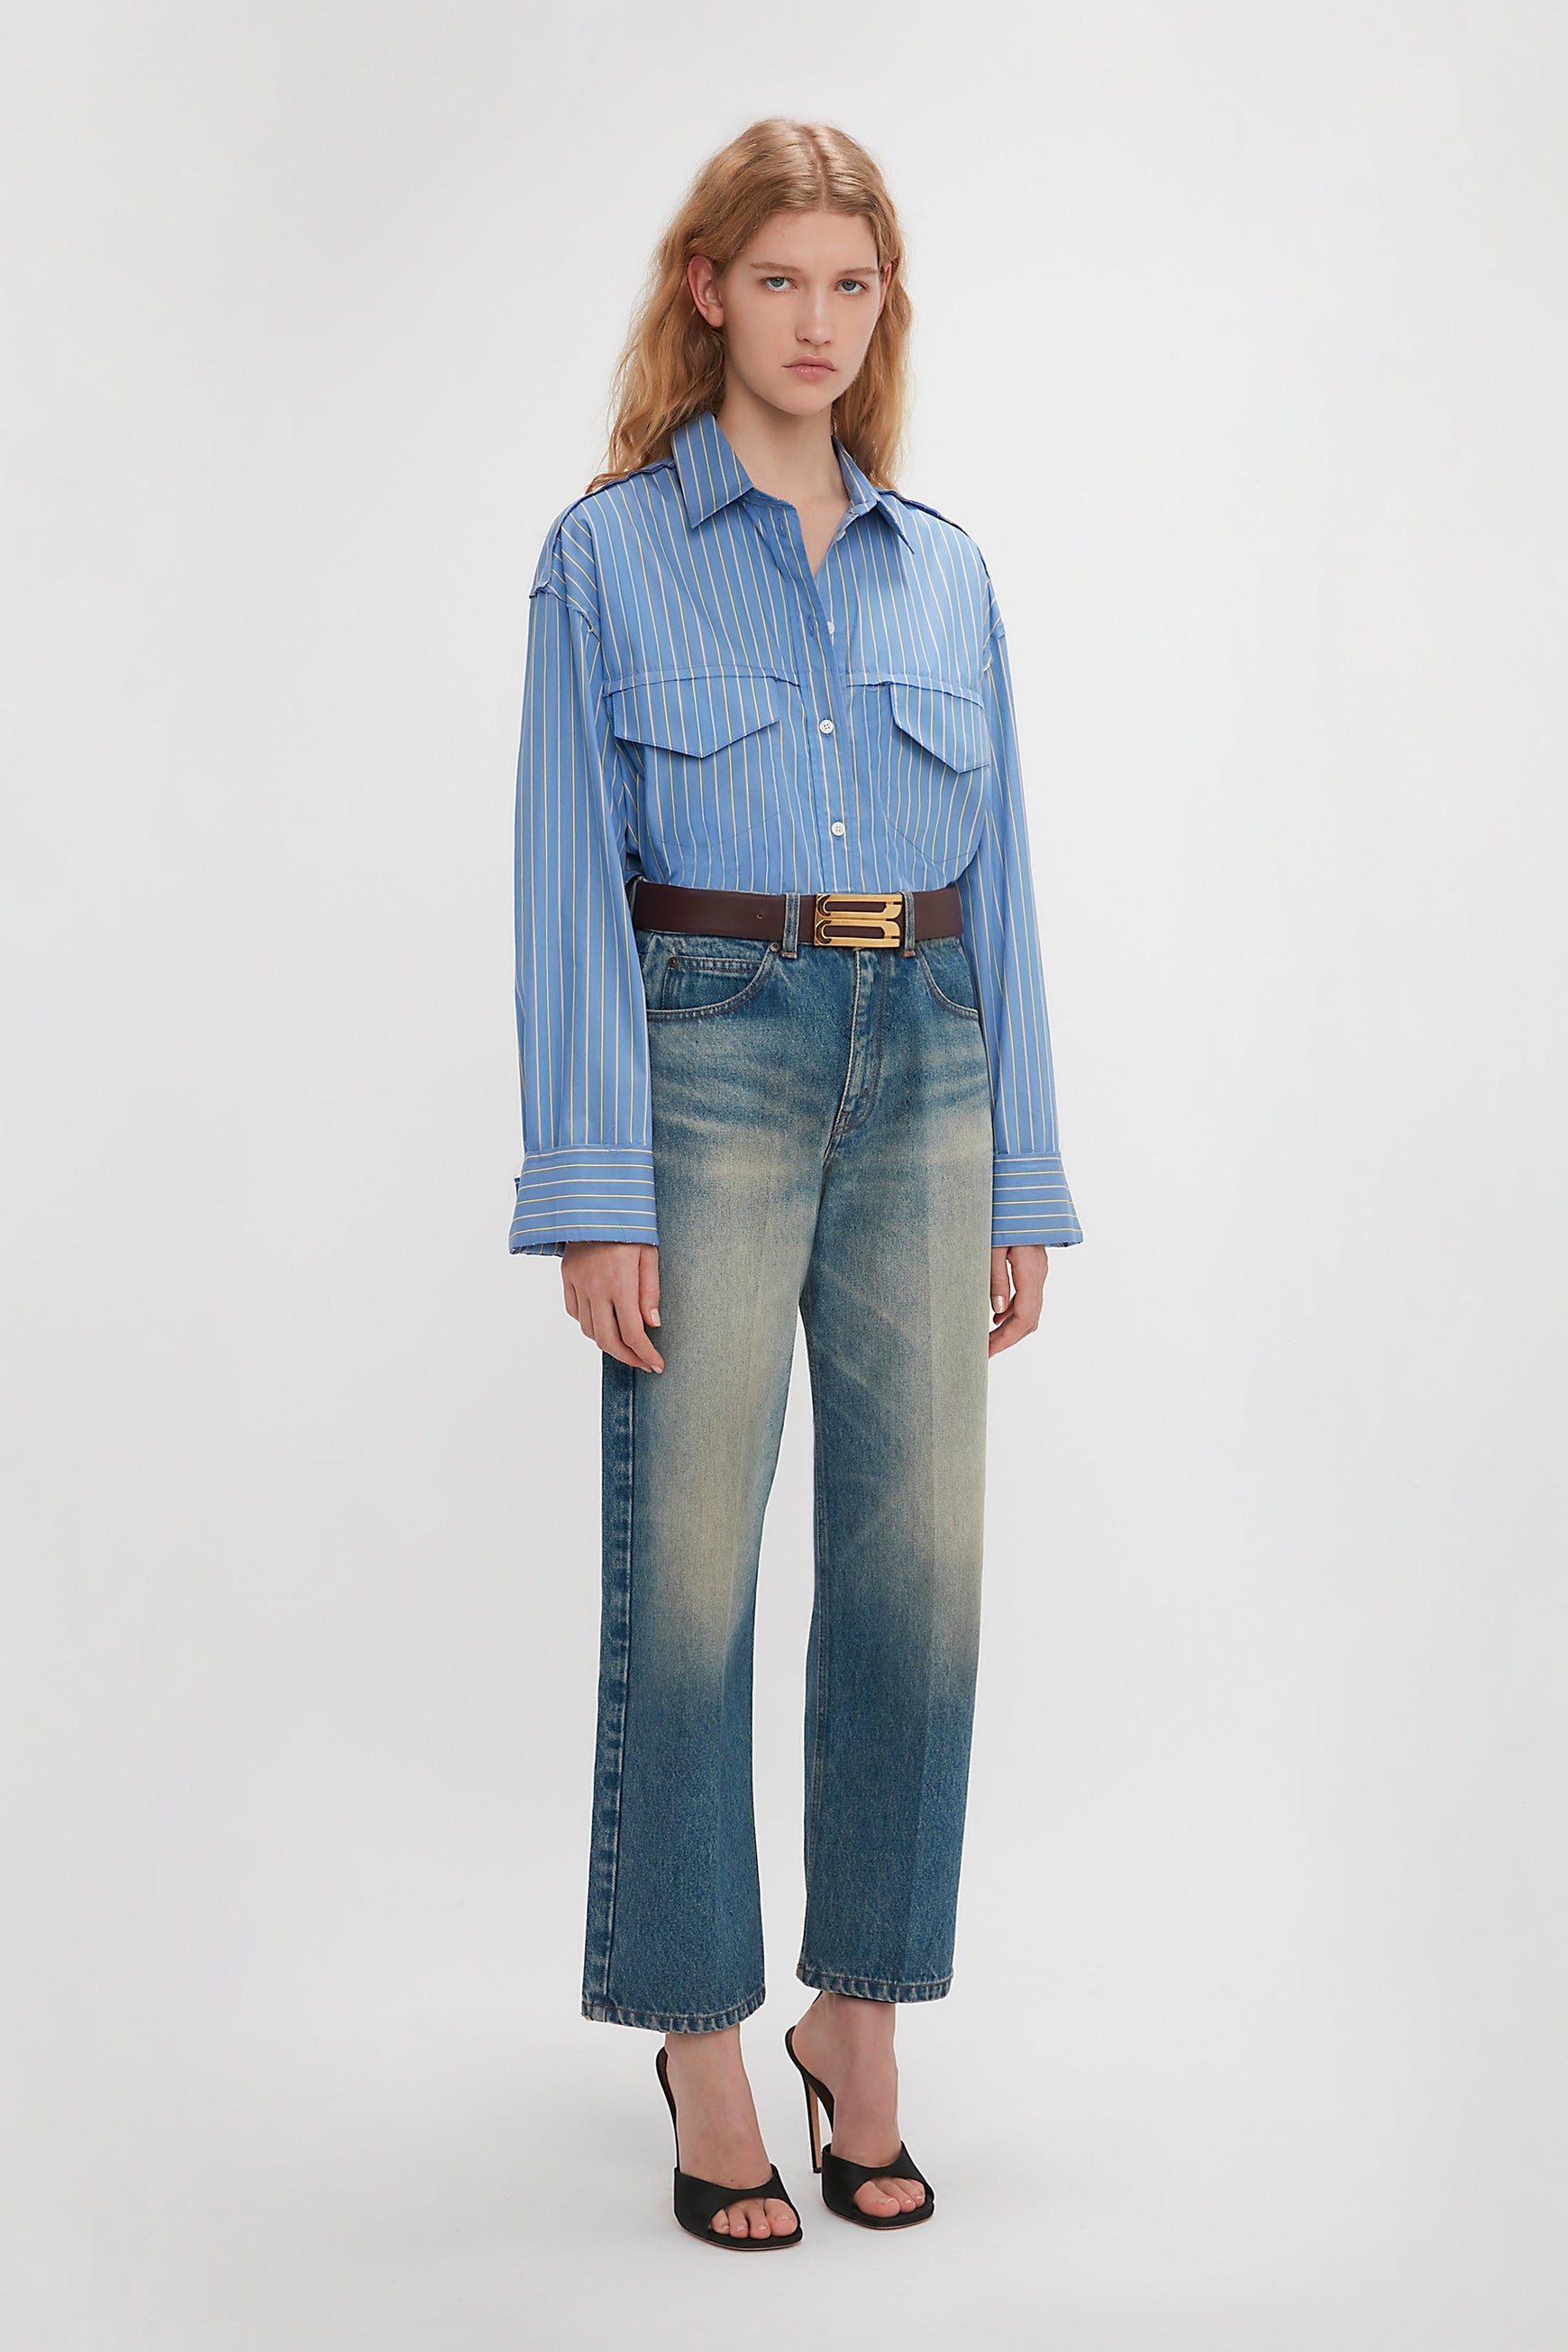 Cropped Seam Detail Shirt In Steel Blue – Victoria Beckham